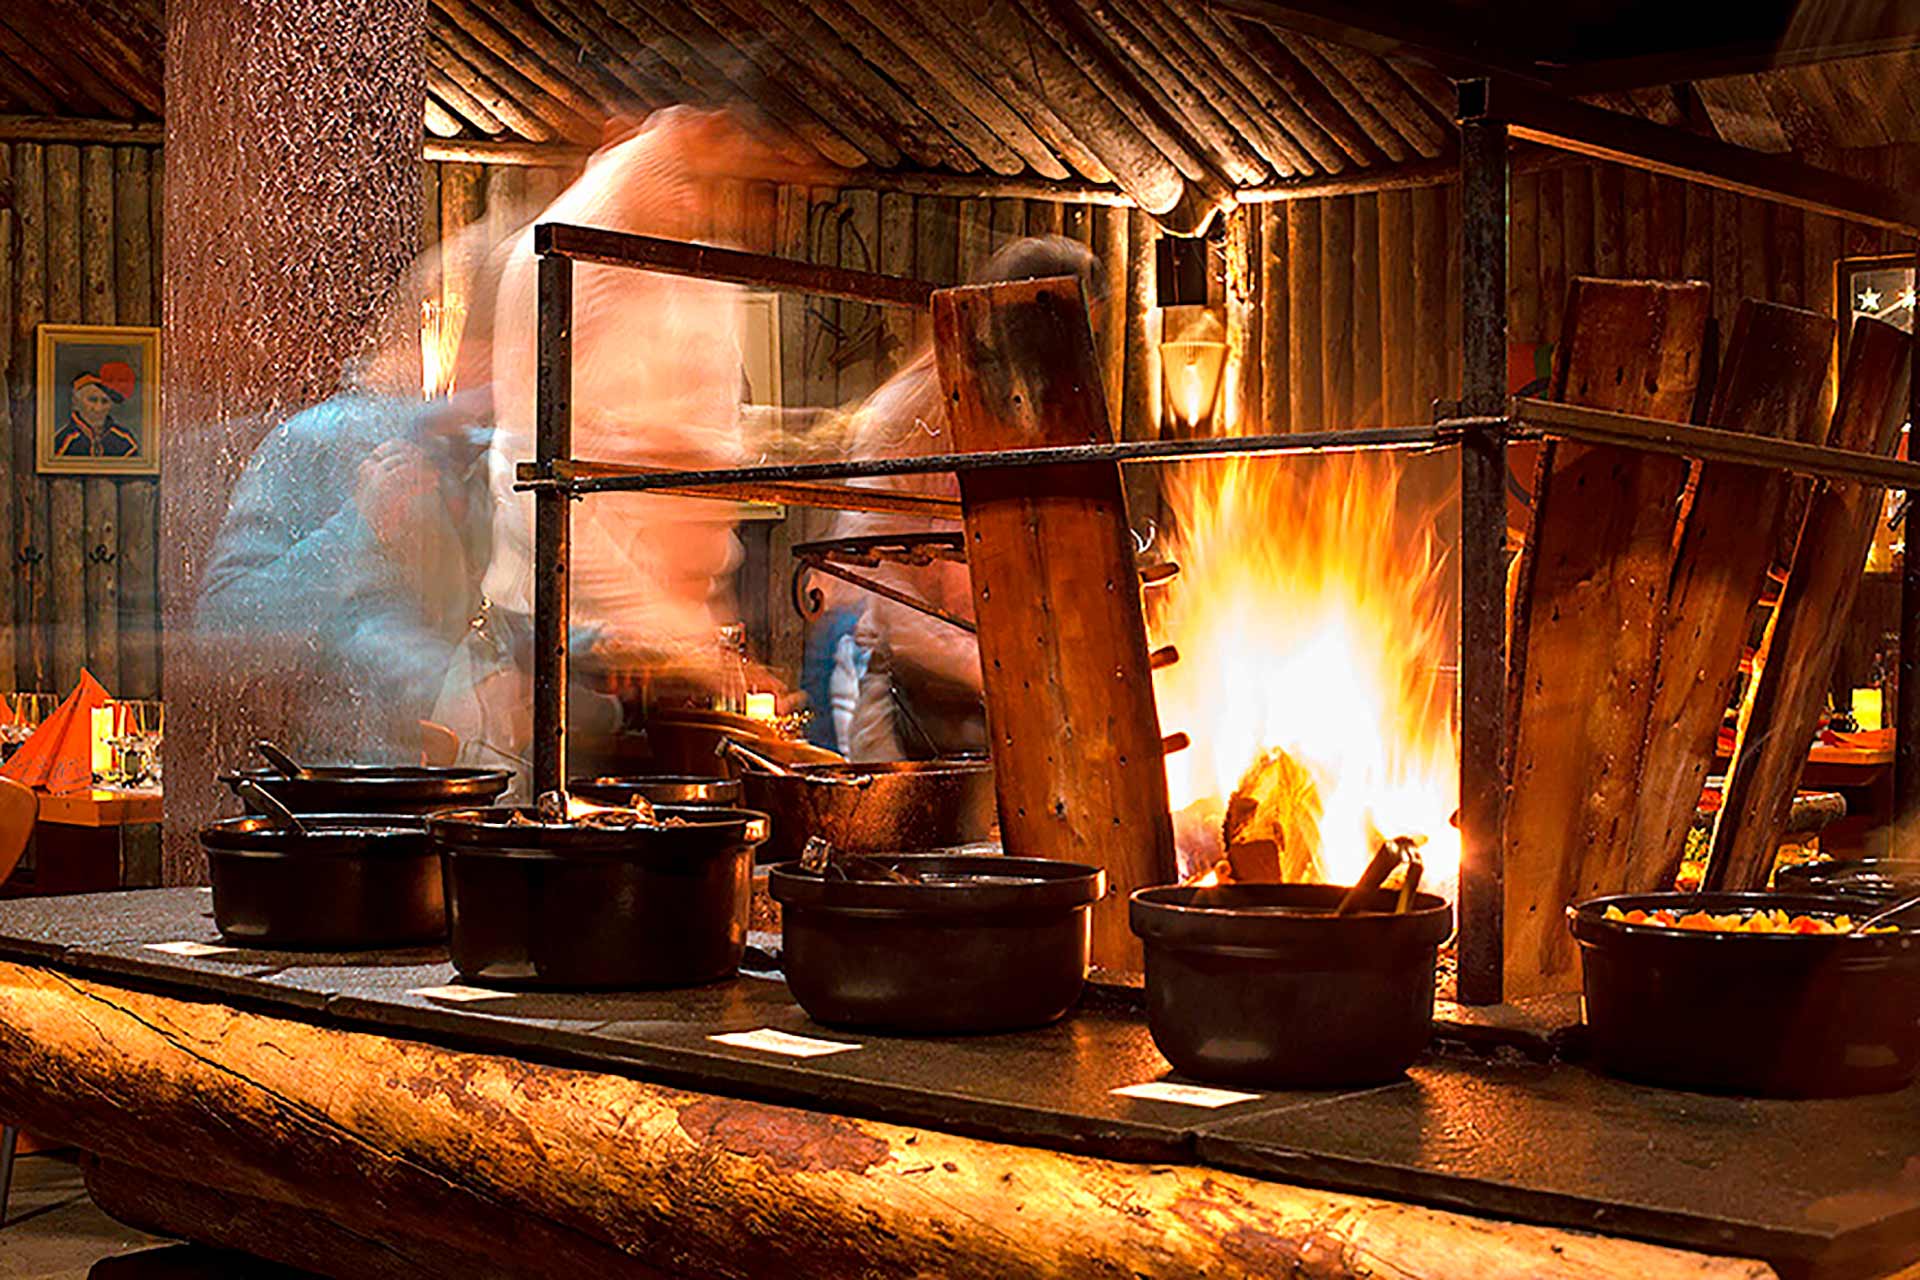 Uniikki ravintola Saamen Kammi tarjoilee lappilaisia makuja elävän tulen äärellä Levillä.